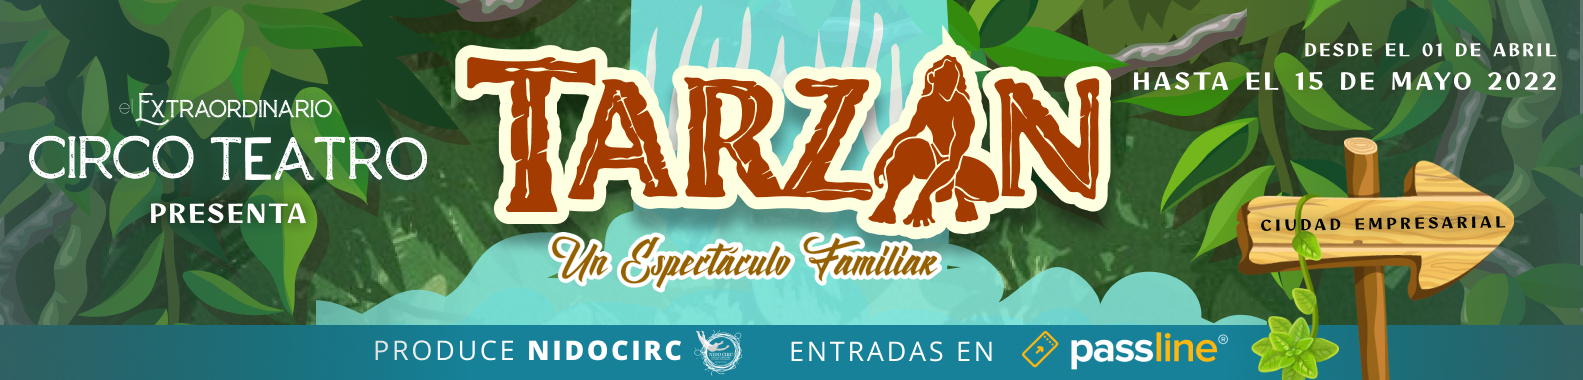 Tarzan - El Extraordinario Circo